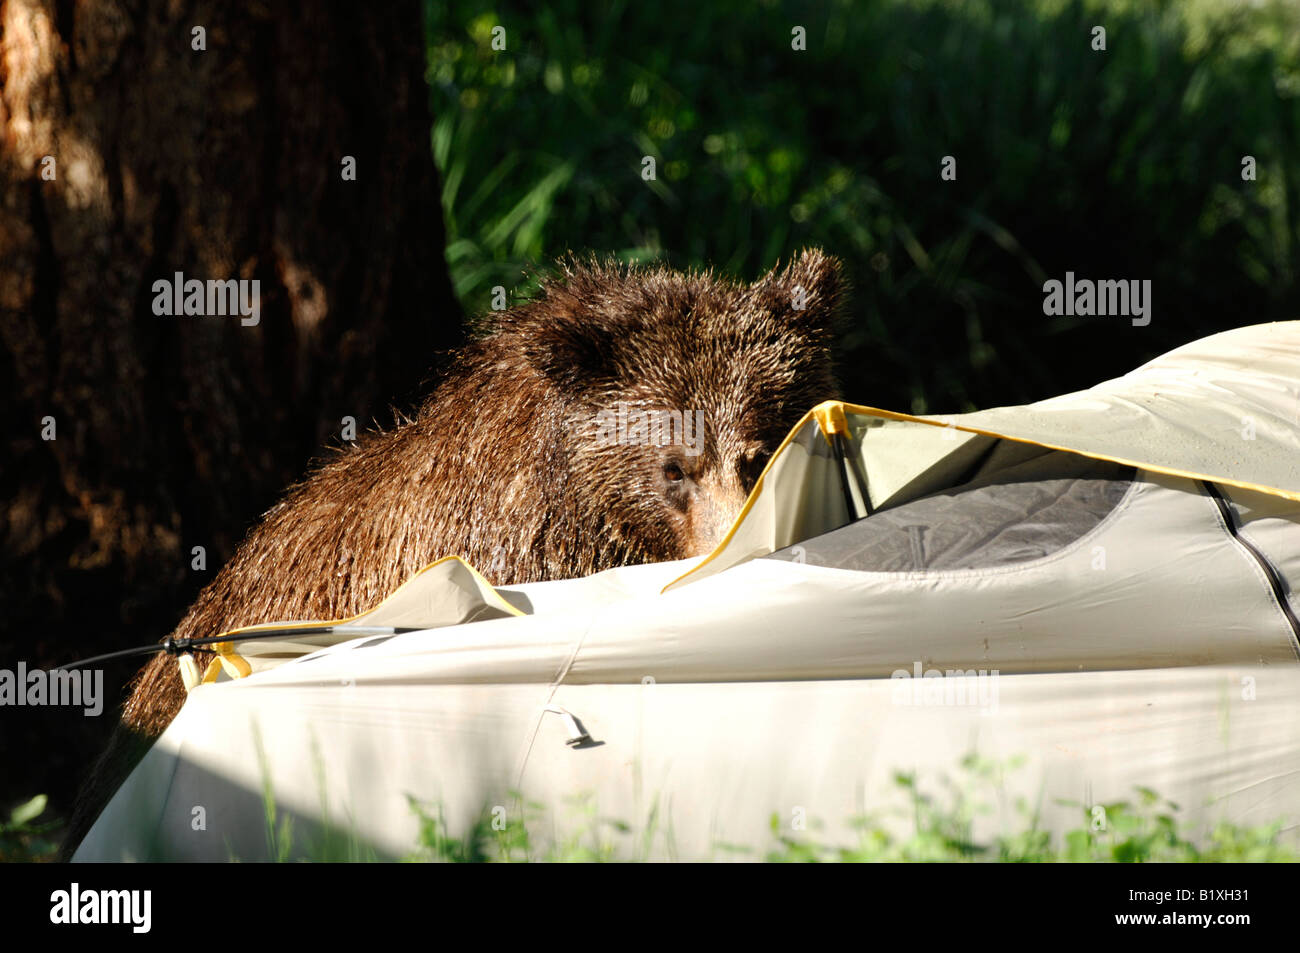 Stock Foto von einem Grizzlybär untersucht ein Zelt auf einem Campingplatz. Stockfoto